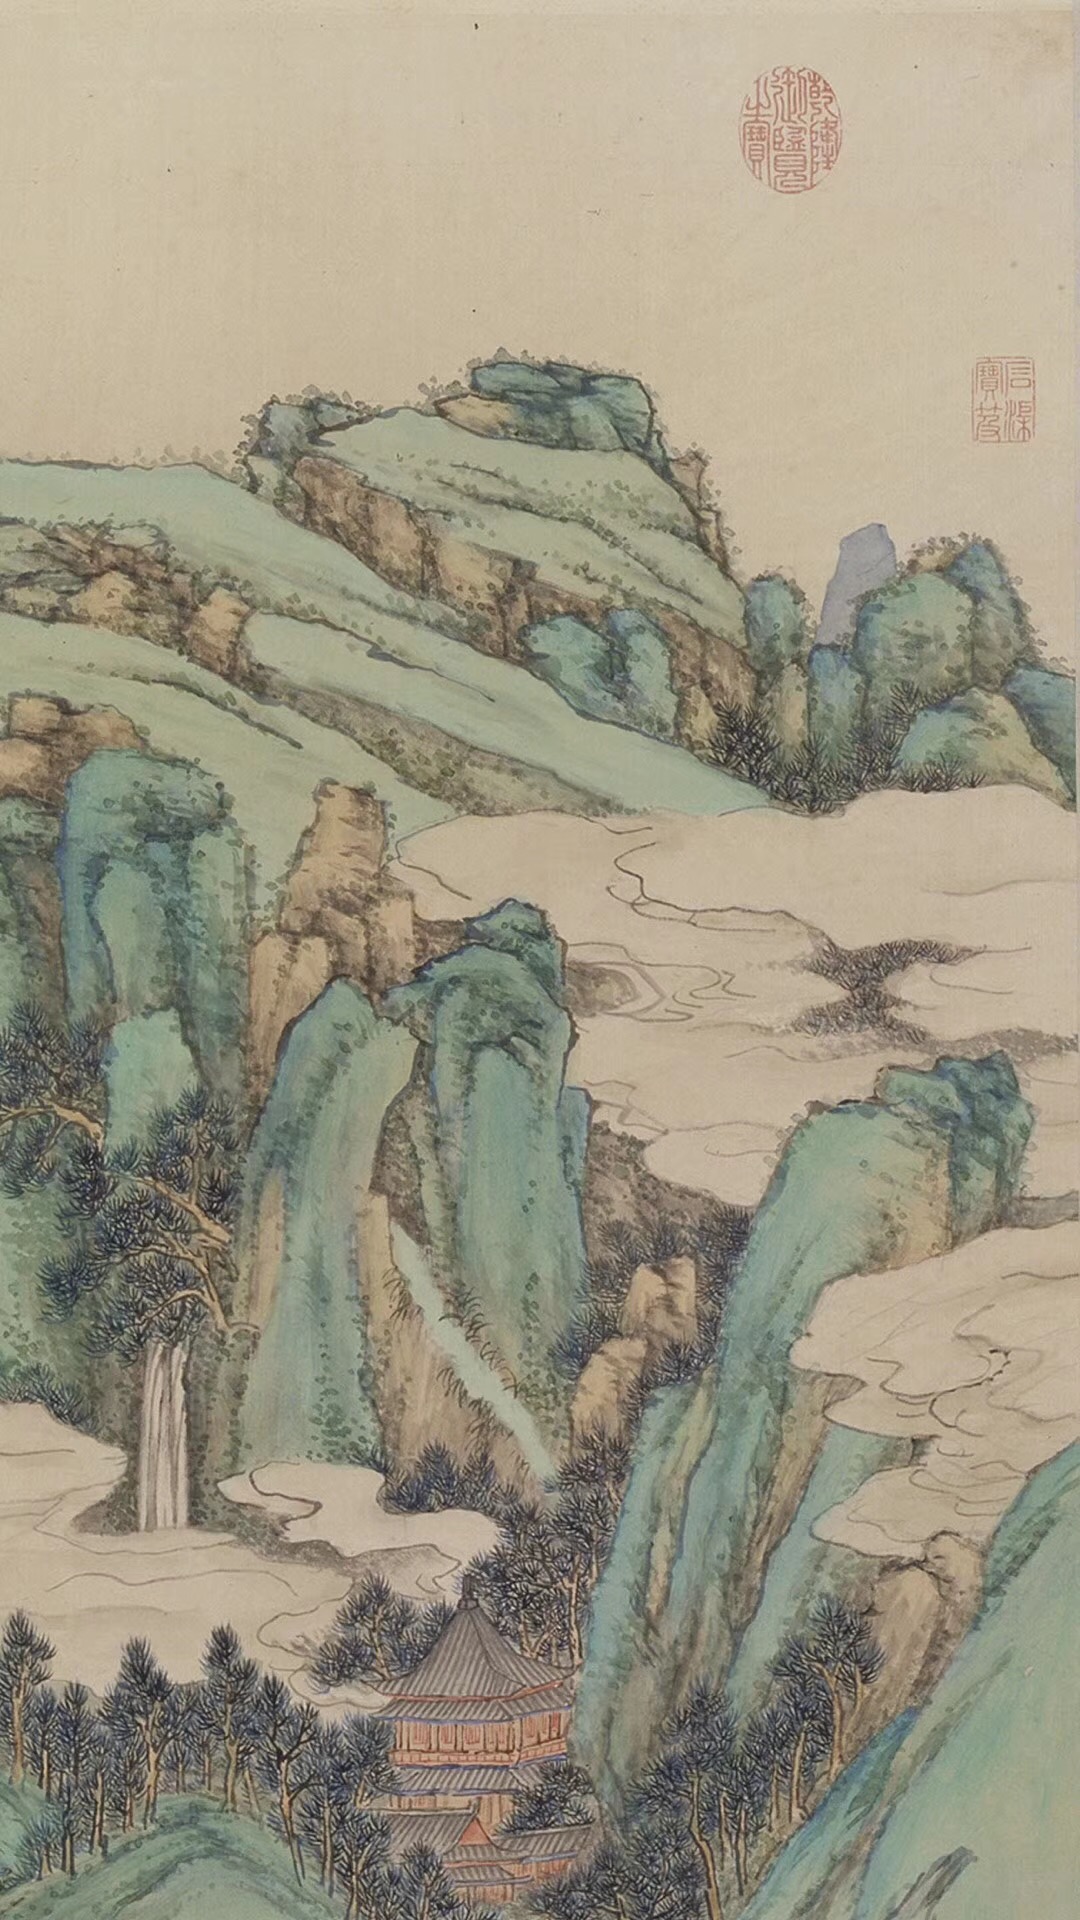 盎然春色的《仙境春长图》：青绿山水生机无限